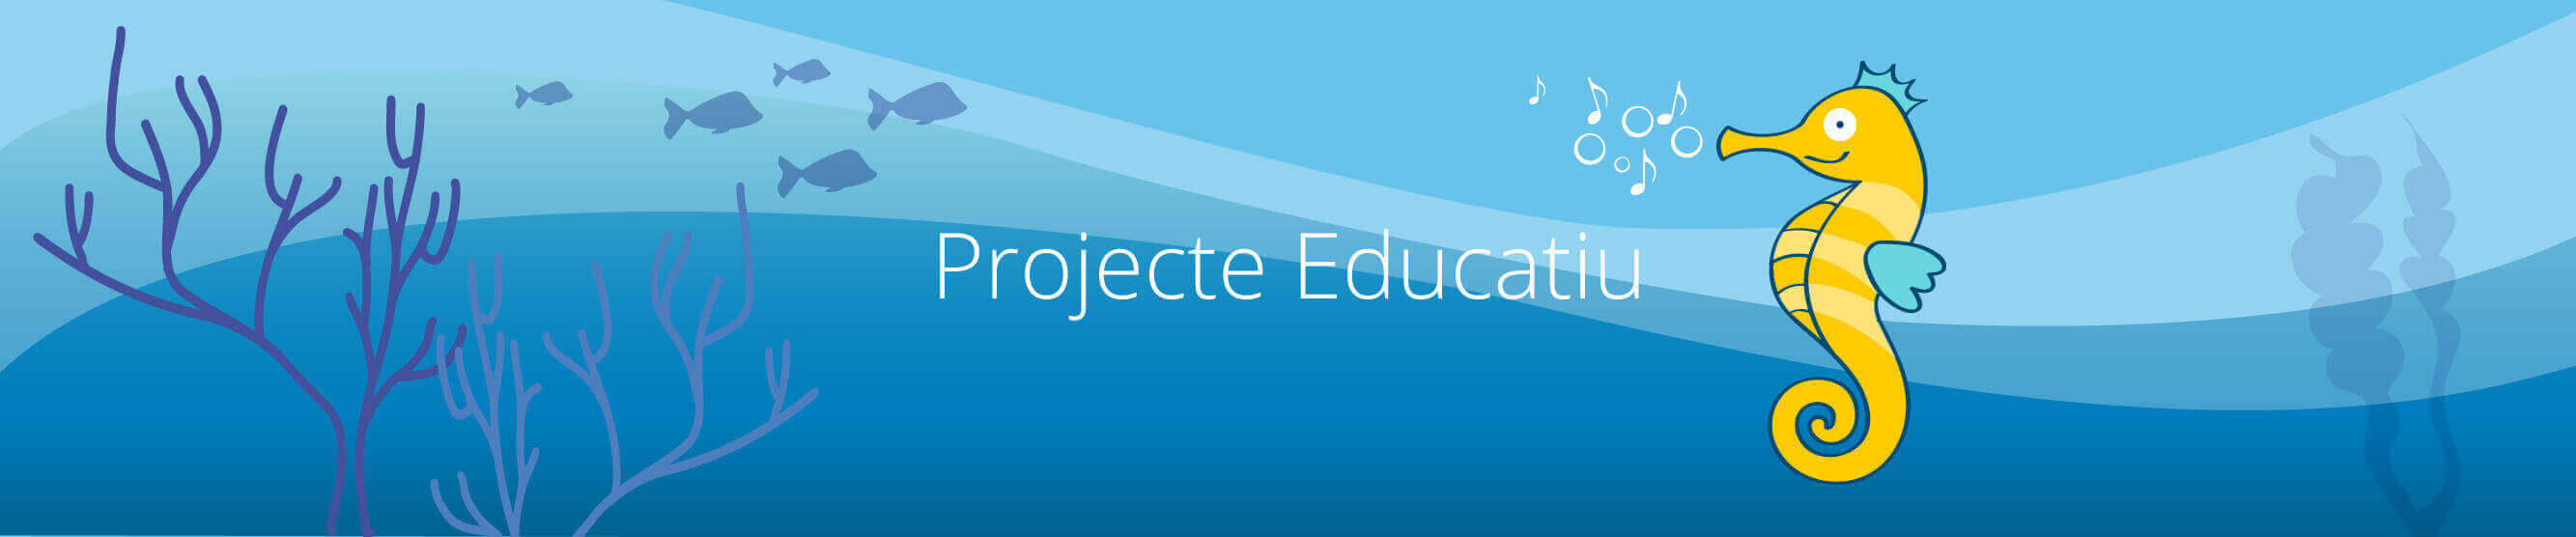 Projecte Educatiu